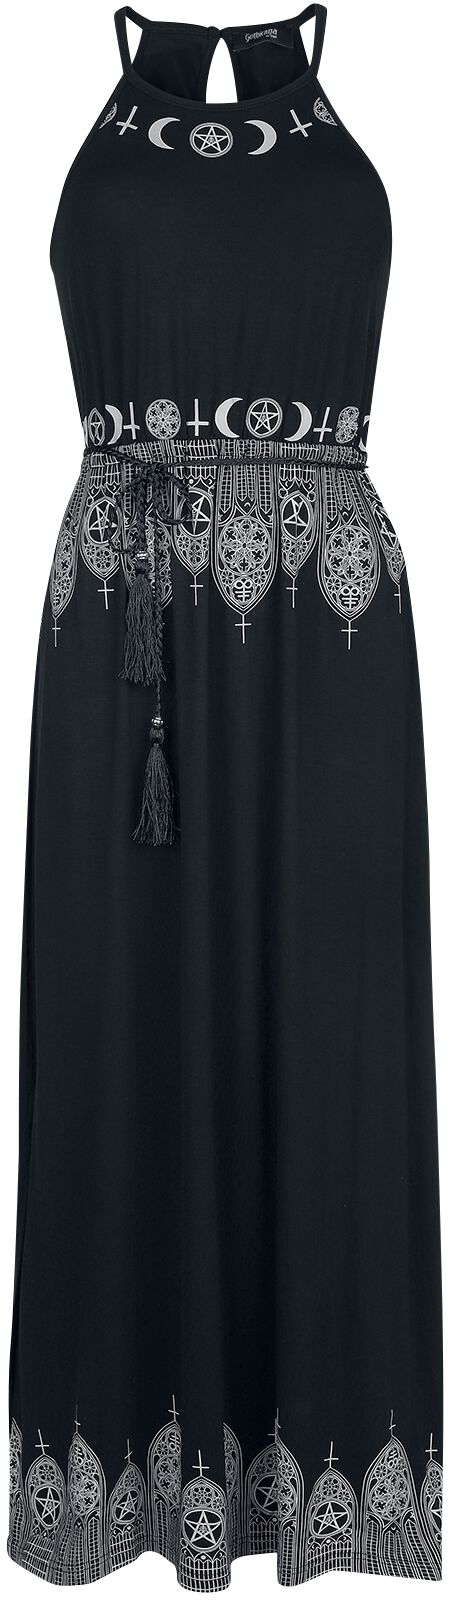 Gothicana by EMP Schwarzes Maxikleid mit Prints und schmalem Bindegürtel Langes Kleid schwarz in L